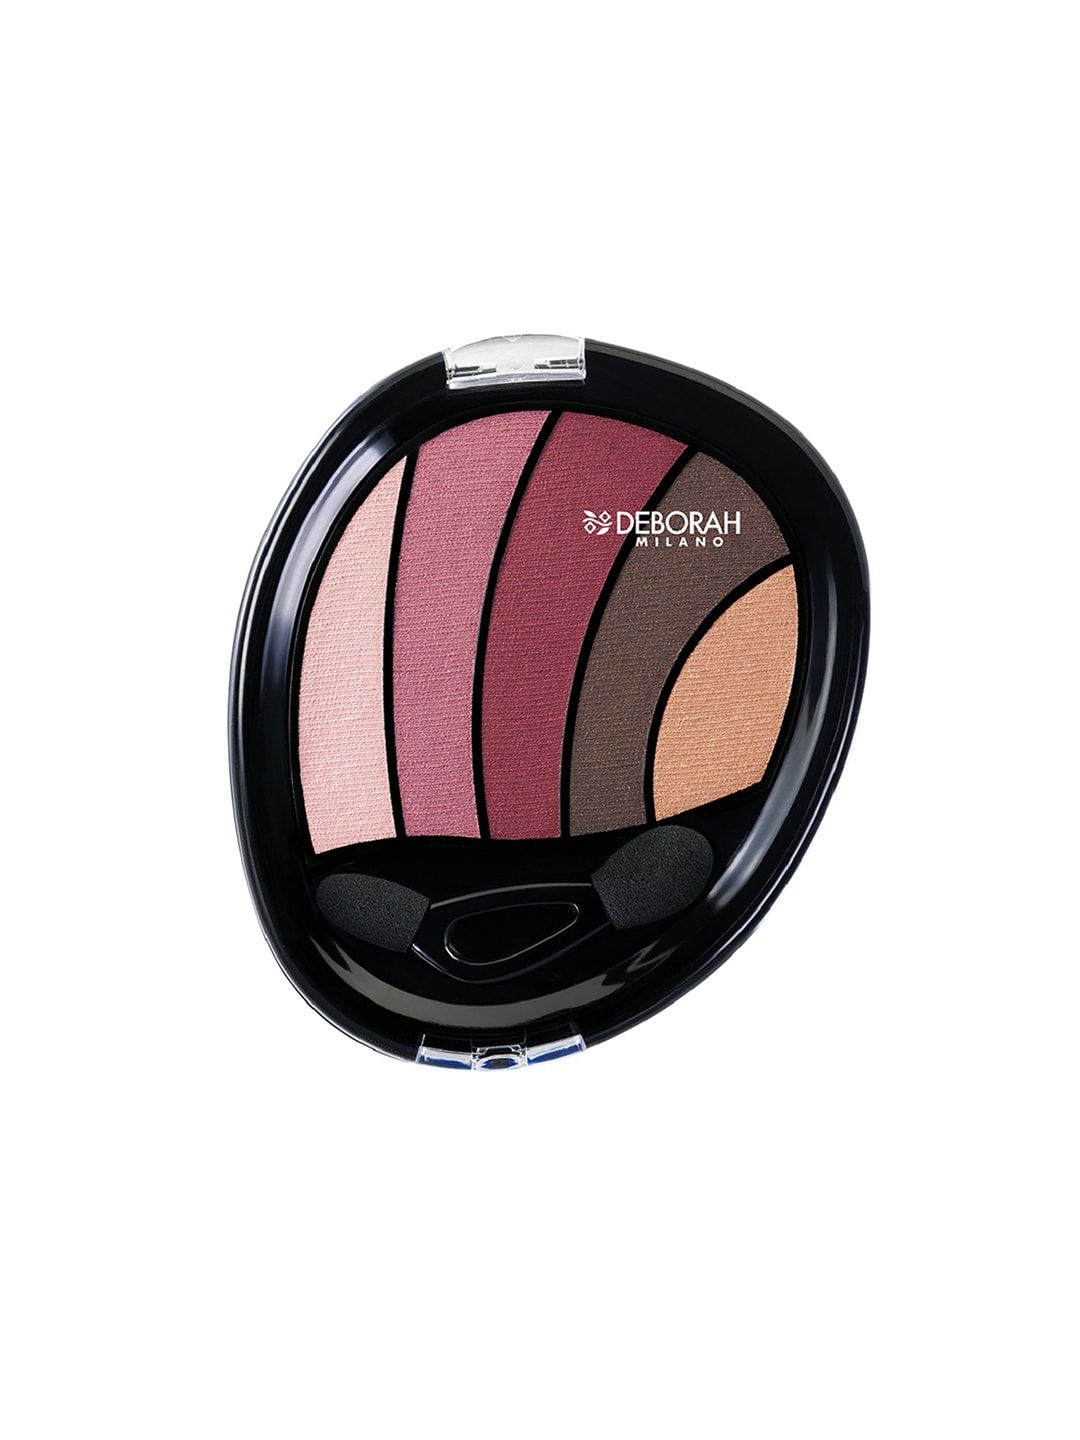 Deborah Milano Perfect Smokey Eye Rose Eyeshadow Palette 02 Price in India